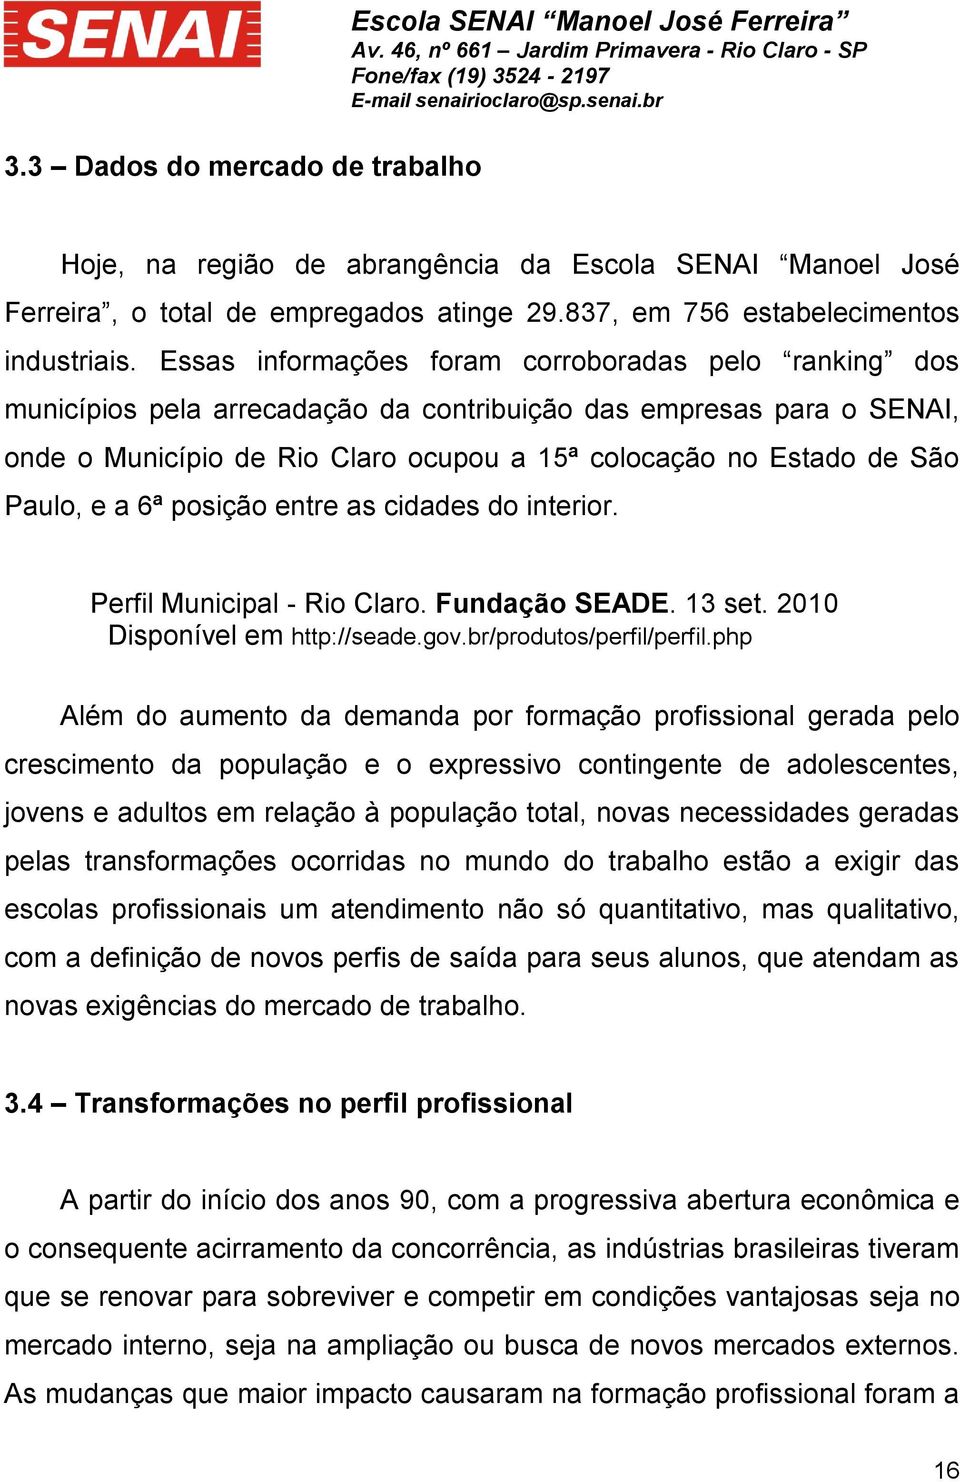 Essas informações foram corroboradas pelo ranking dos municípios pela arrecadação da contribuição das empresas para o SENAI, onde o Município de Rio Claro ocupou a 15ª colocação no Estado de São